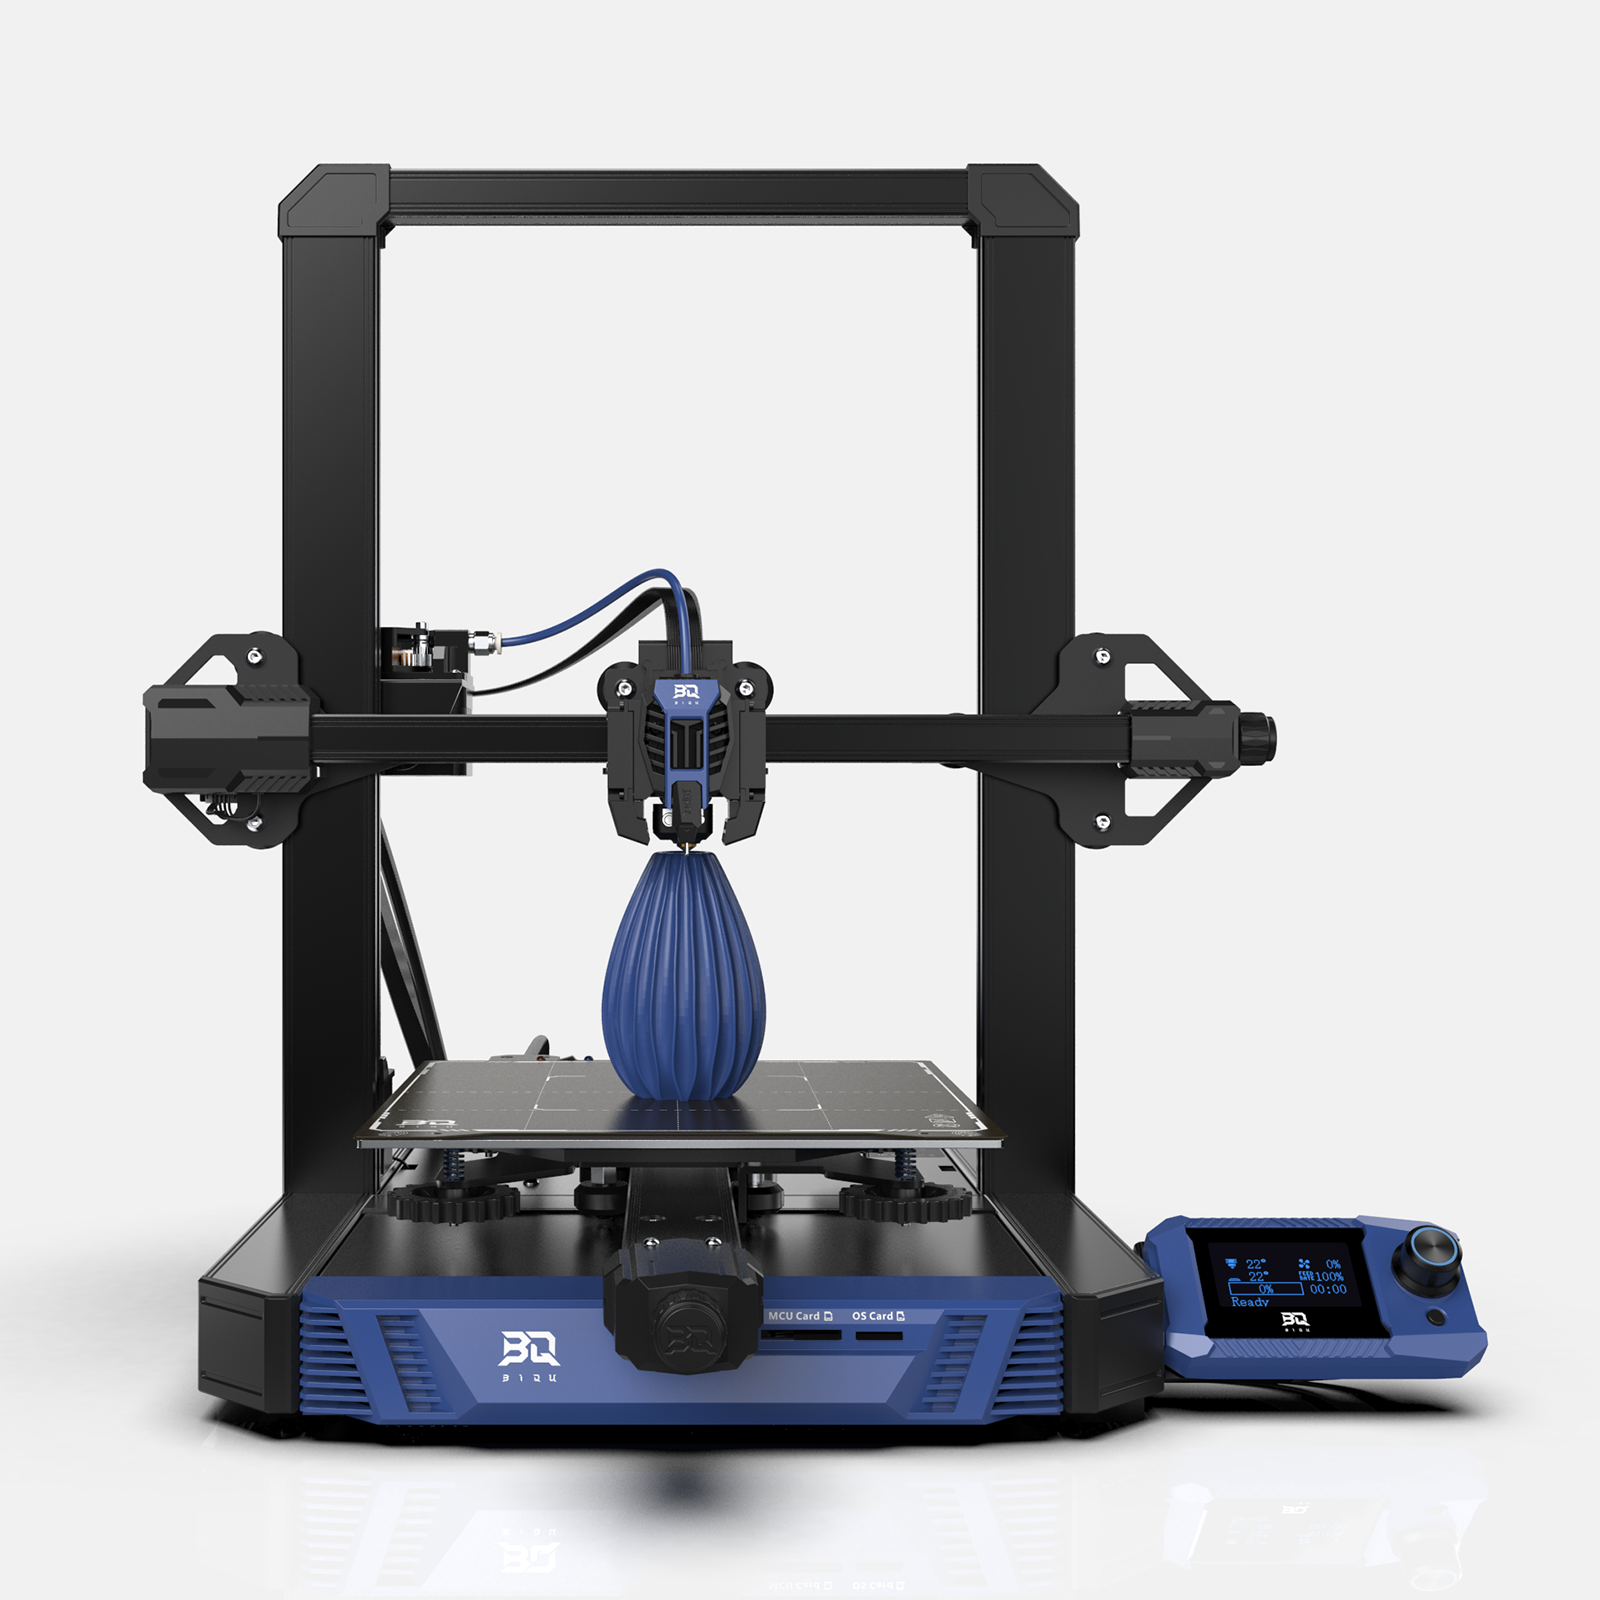 BIQU Hurakan Klipper 3D-Drucker 